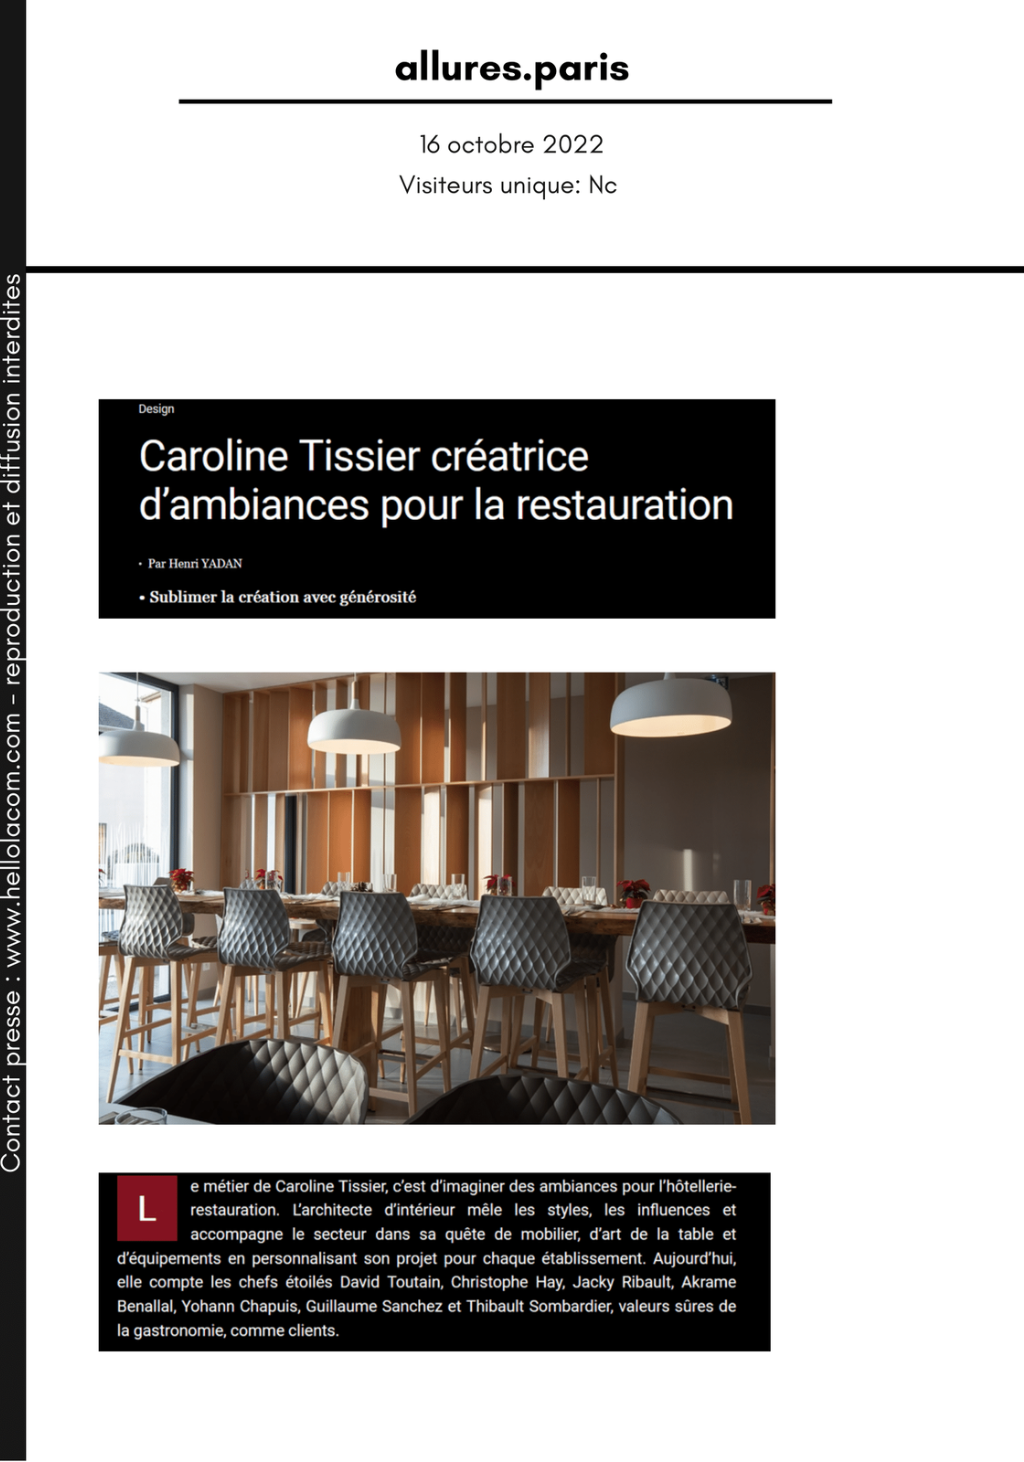 Caroline Tissier, créatrice d'ambiance pour les restaurants